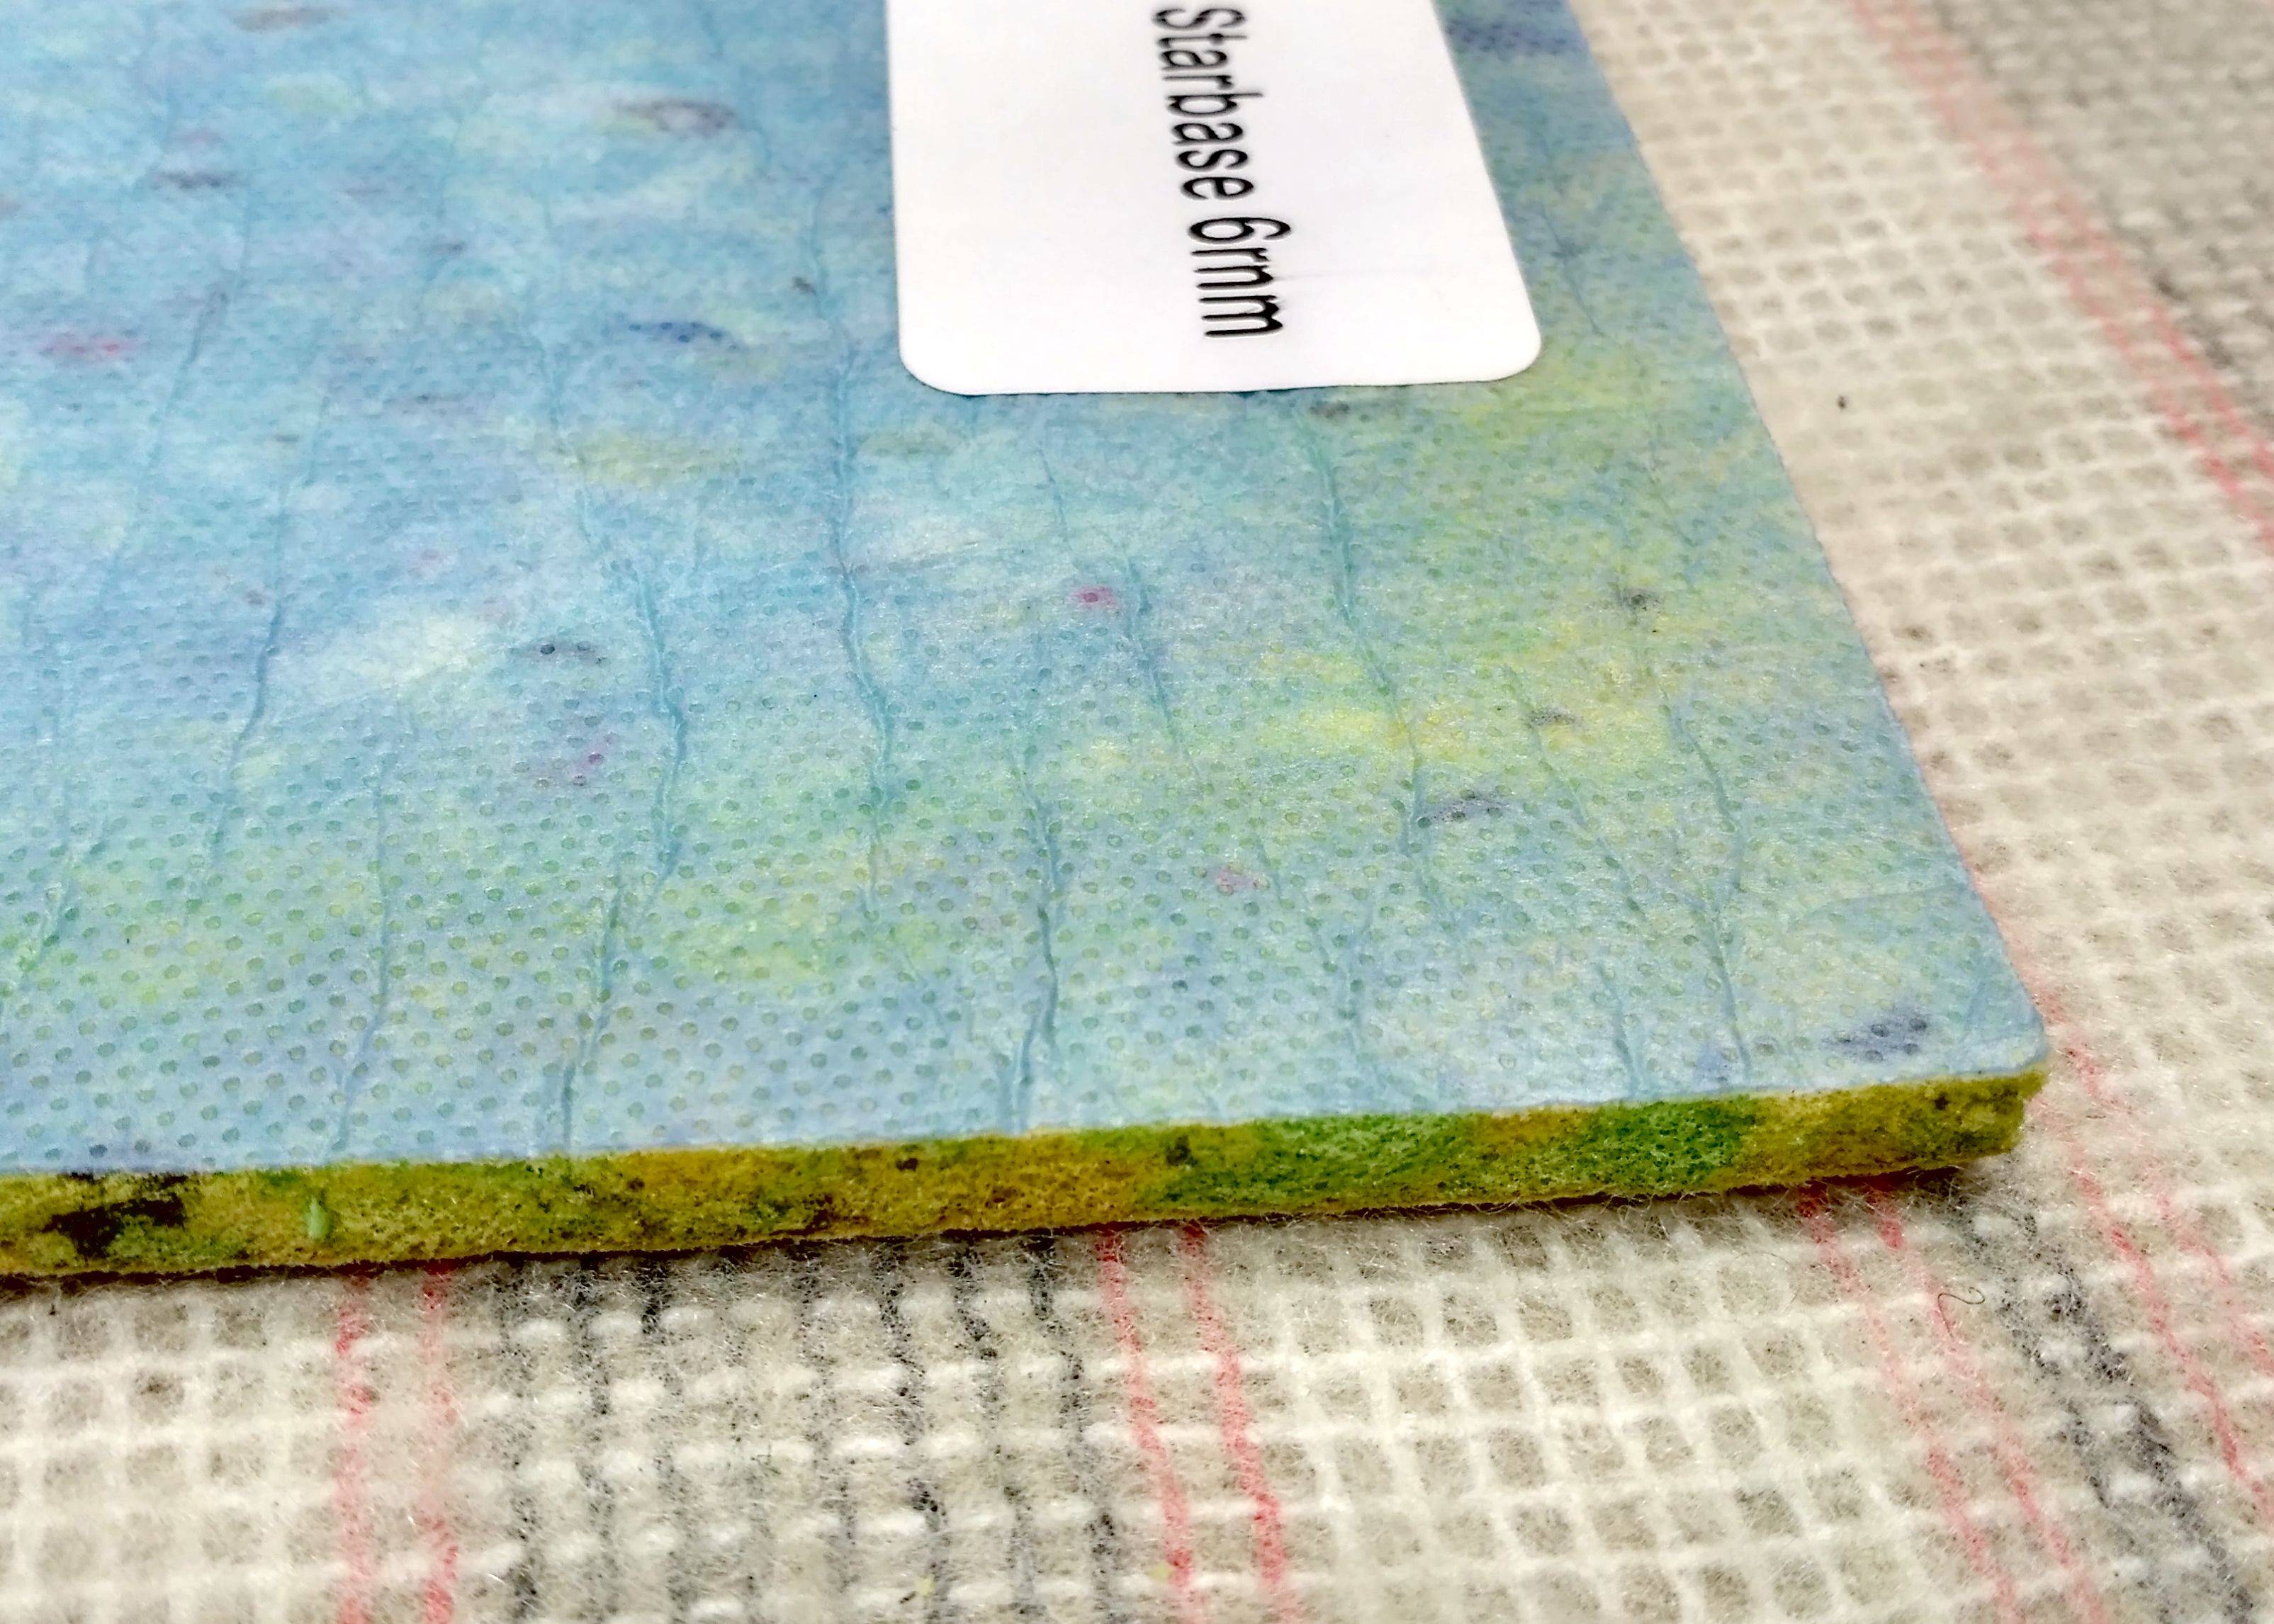 Антискользящая подложка под ковер — гид по самым популярным материалам | текстильпрофи - полезные материалы о домашнем текстиле